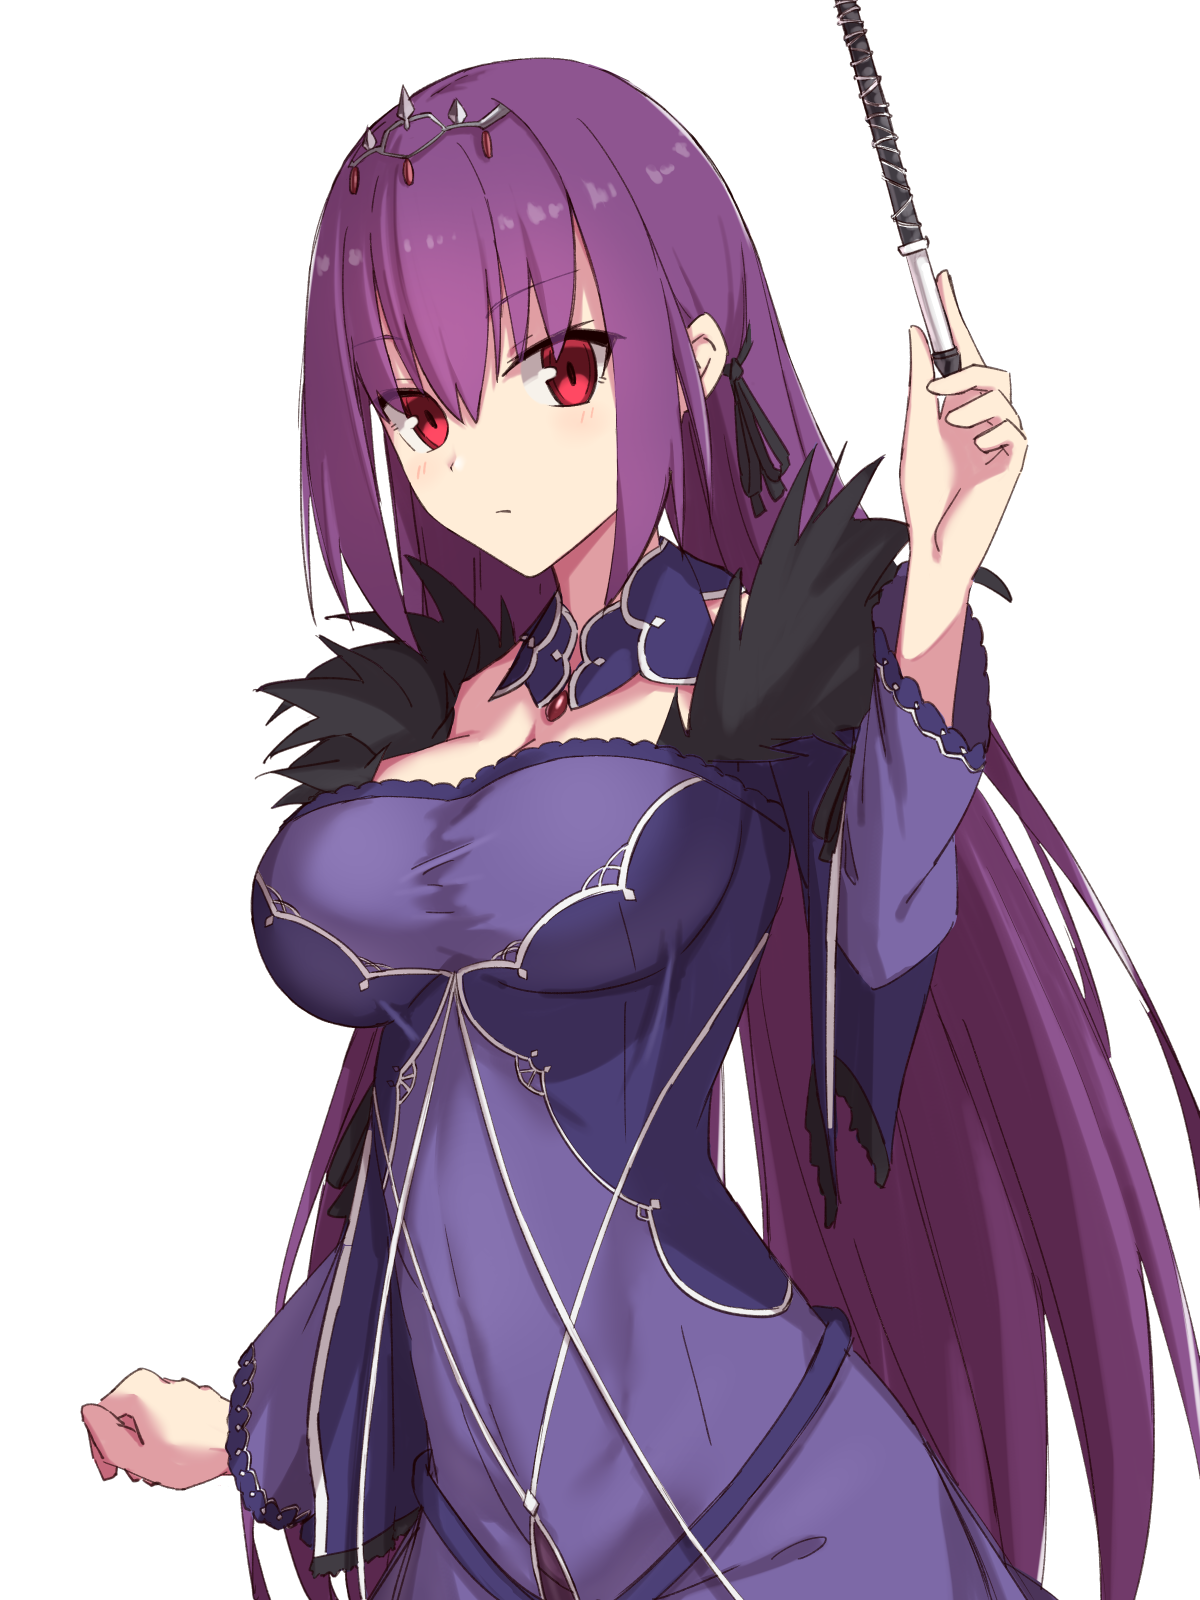 Anime 1200x1600 anime anime girls Fate series Fate/Grand Order Scathach Skadi boobs long hair purple hair artwork fan art digital art